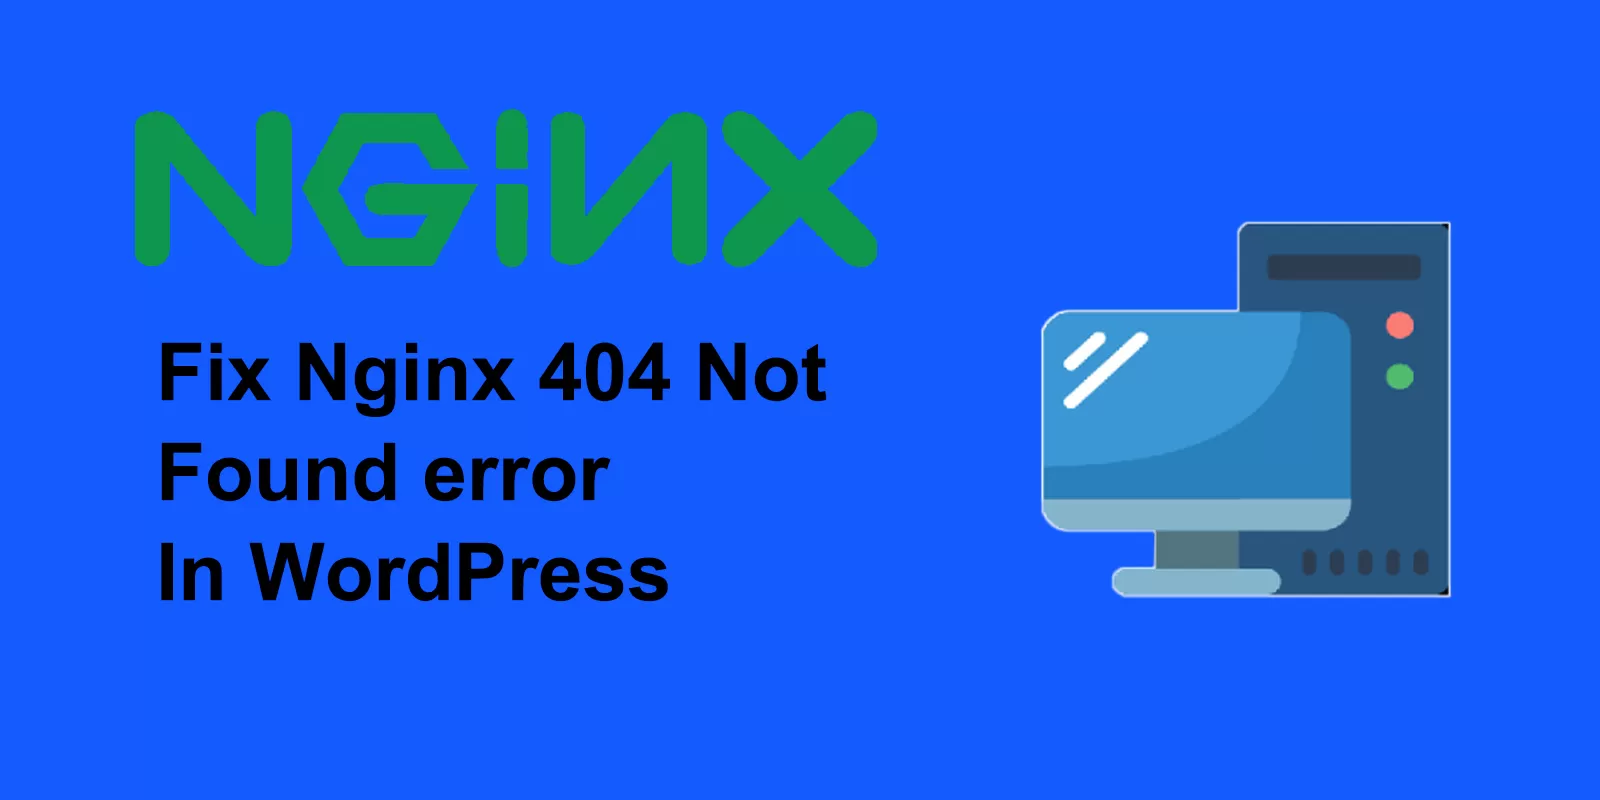 fix the nginx 404 not found error